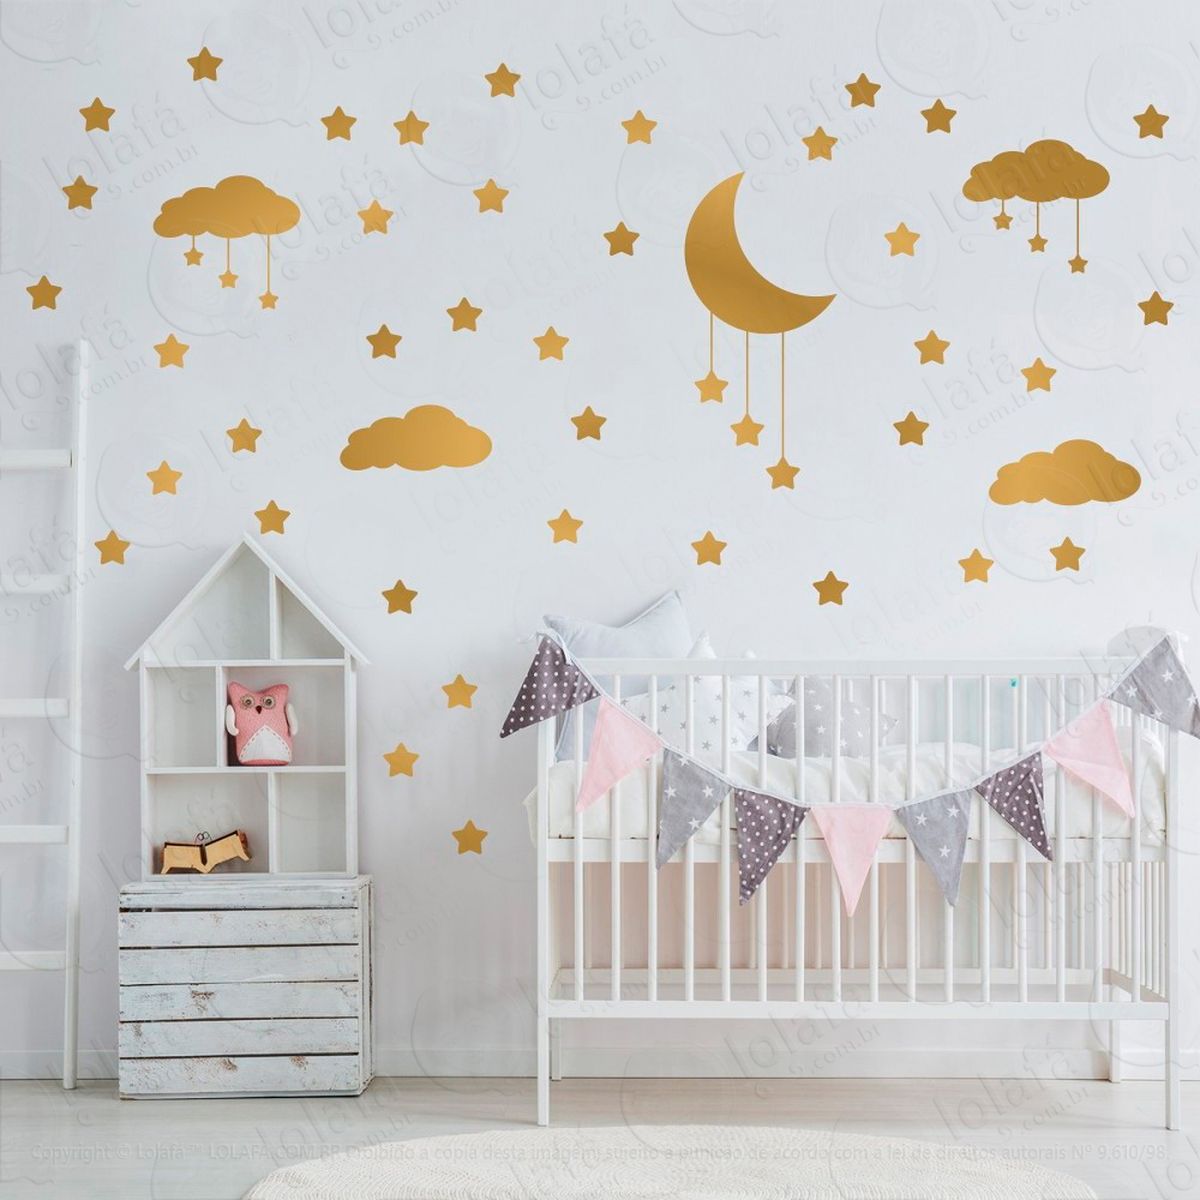 adesivos nuvens estrelas e lua 60 peças adesivos para quarto de bebê infantil - mod:748